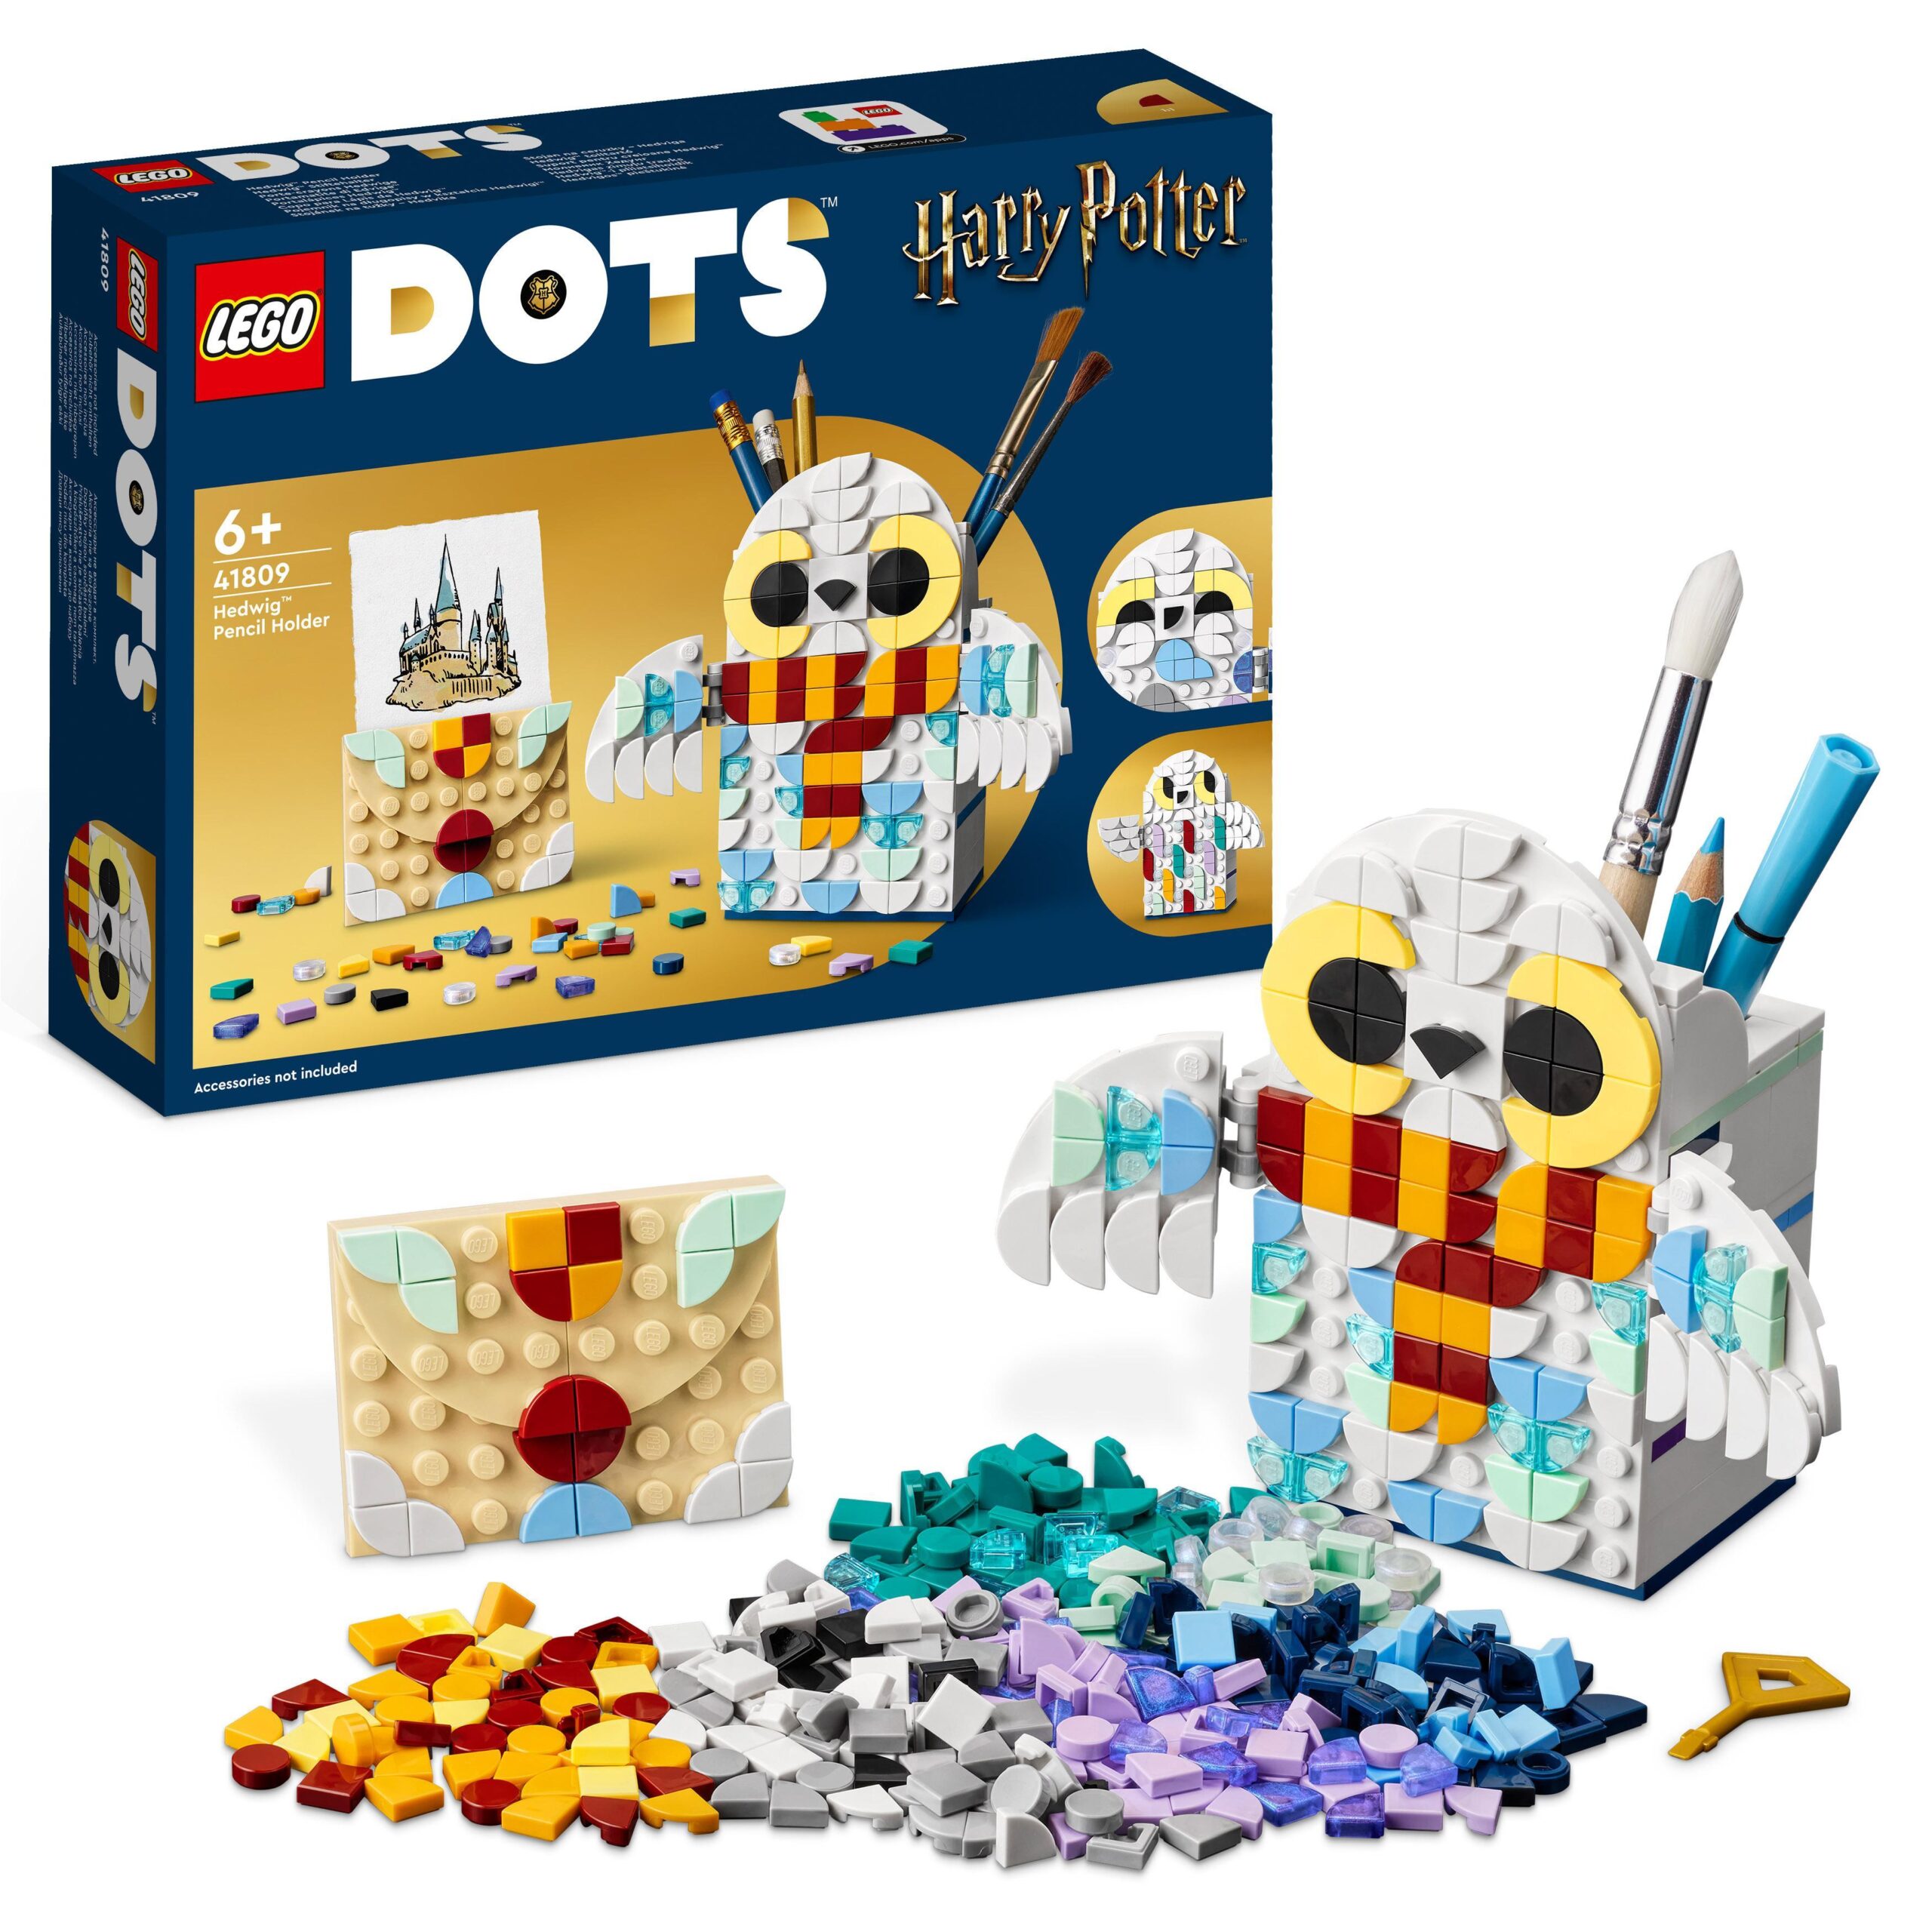 Lego dots 41809 portamatite di edvige, accessori da scrivania di harry potter con portapenne e portablocco, giochi per bambini - 3083, DOTS